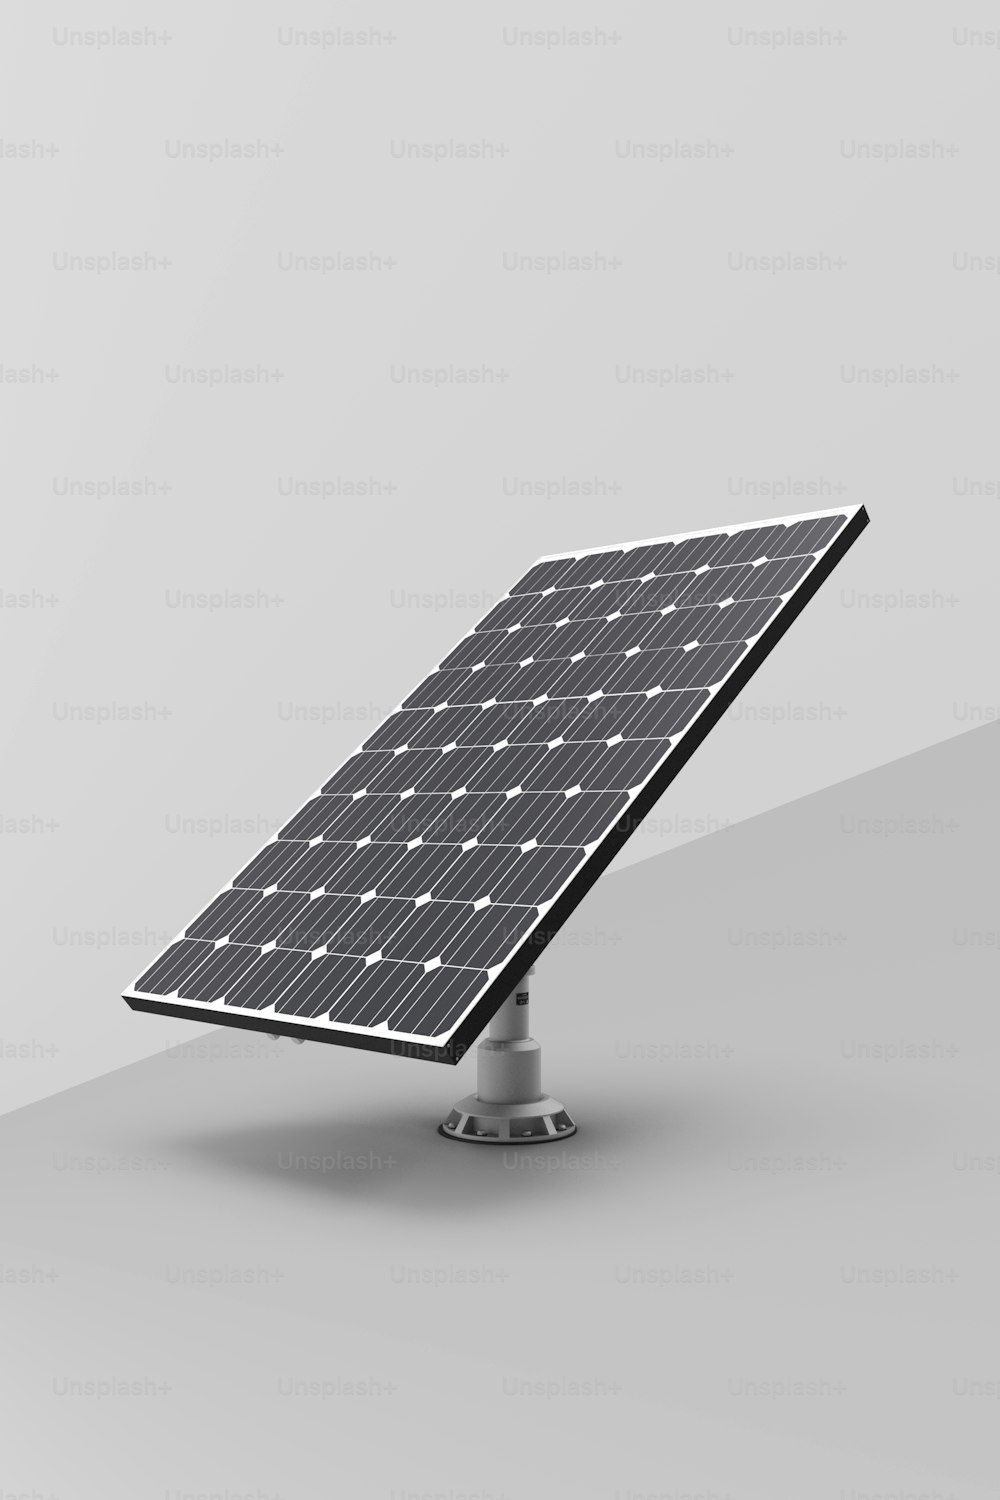 Une photo en noir et blanc d’un panneau solaire